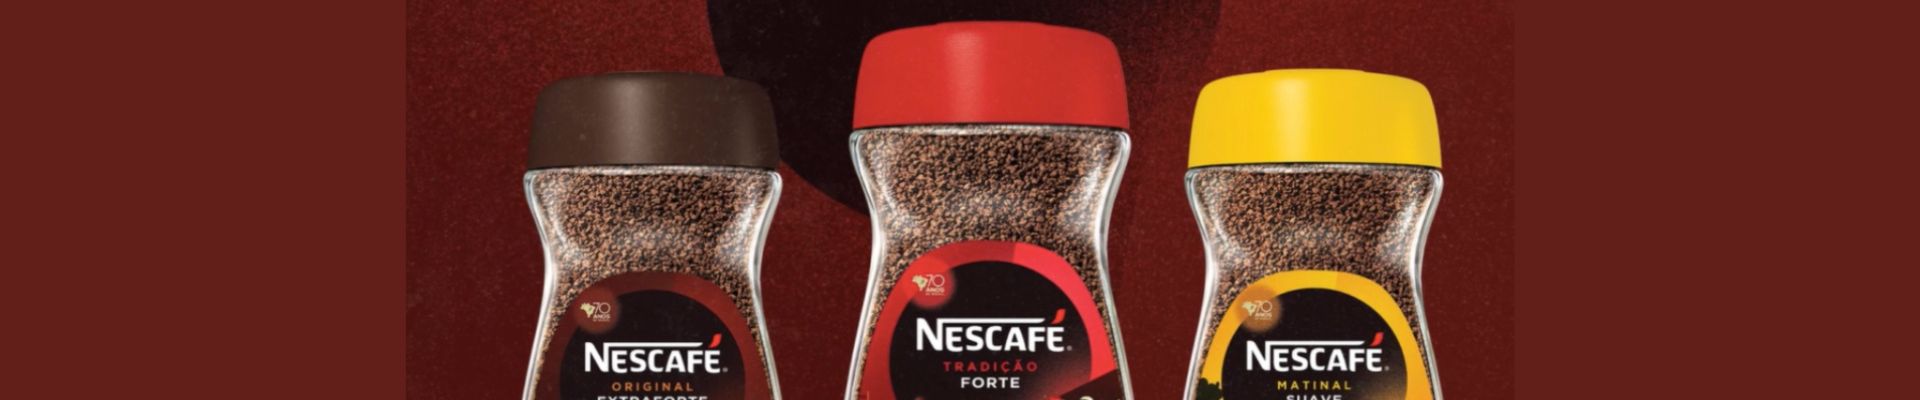 Nescafé incentiva os consumidores a compartilharem suas histórias com a marca